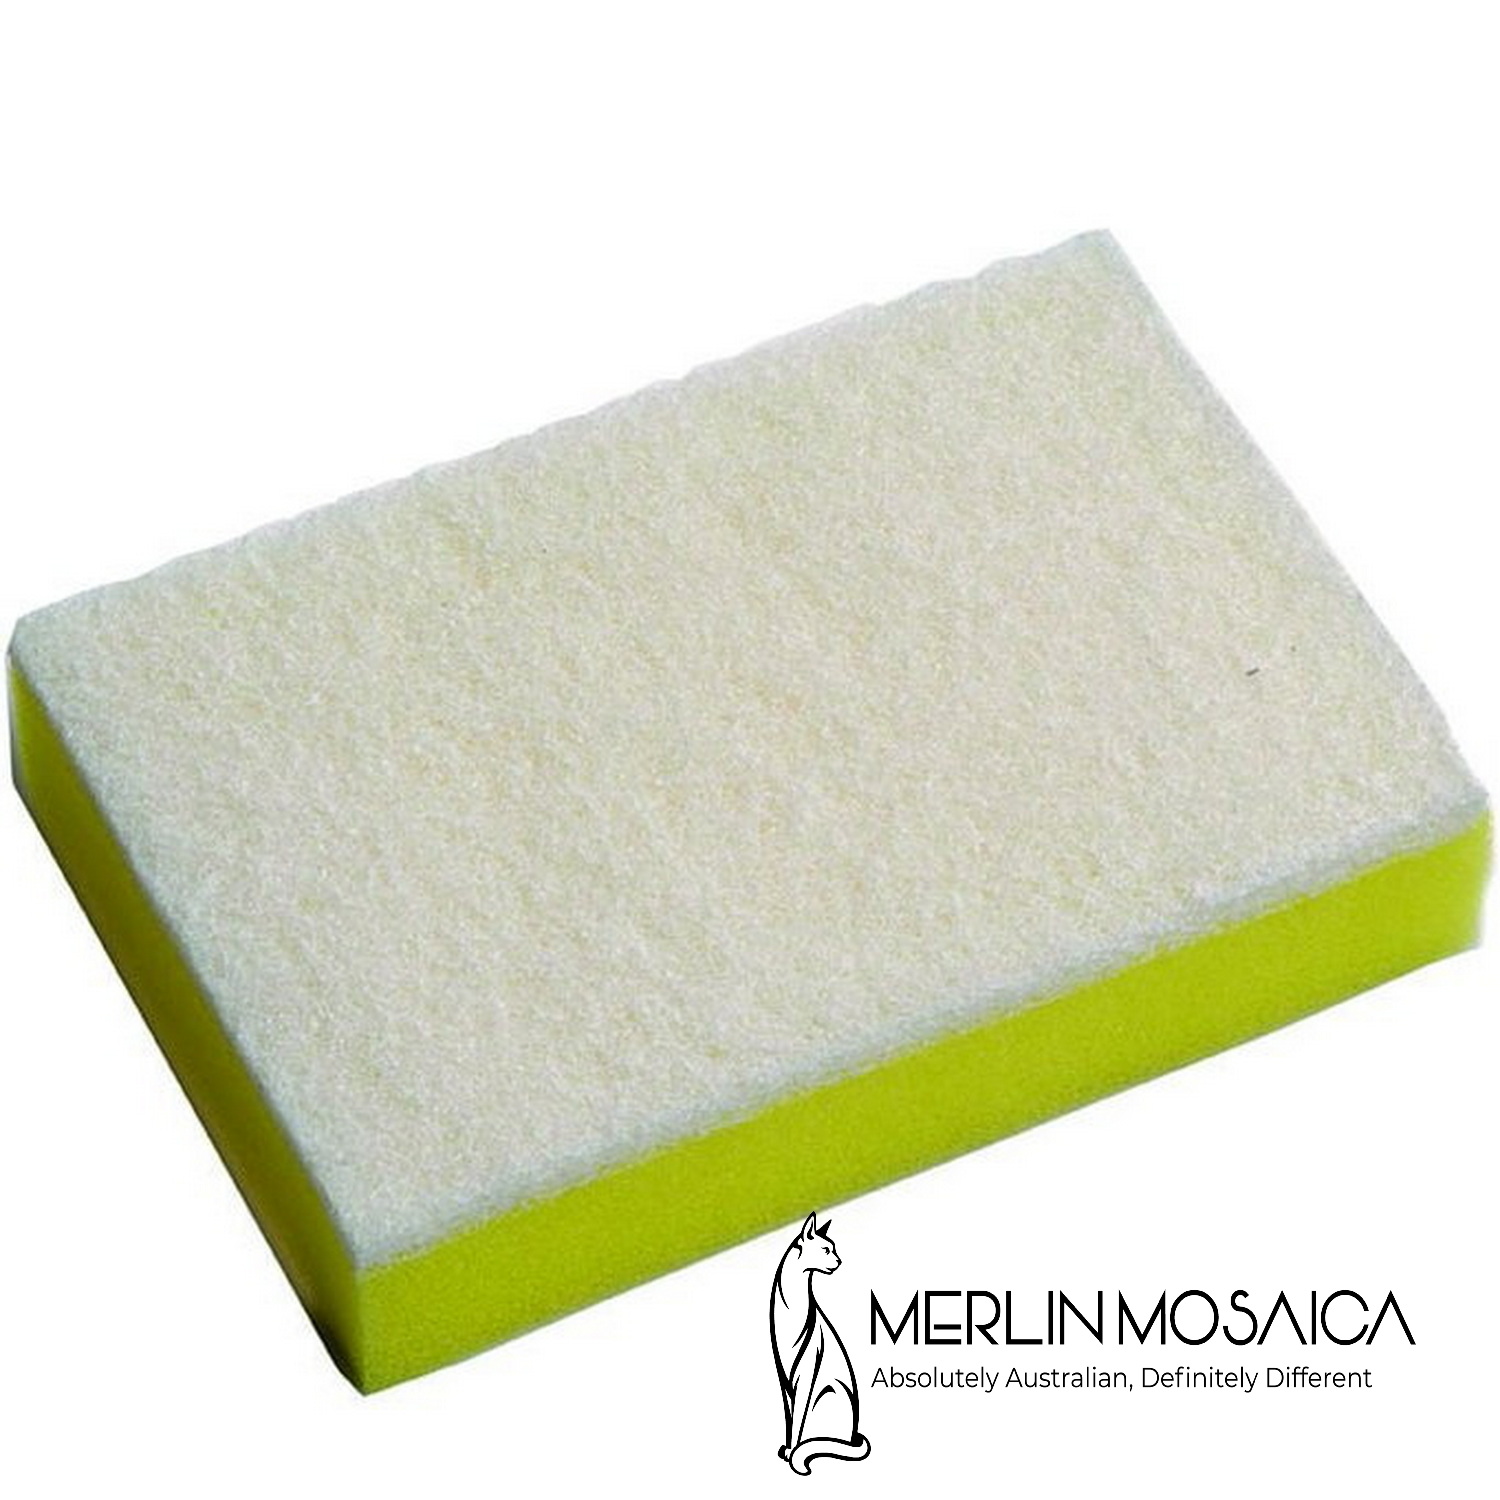 Soft Sponge Scourer - Merlin Mosaica